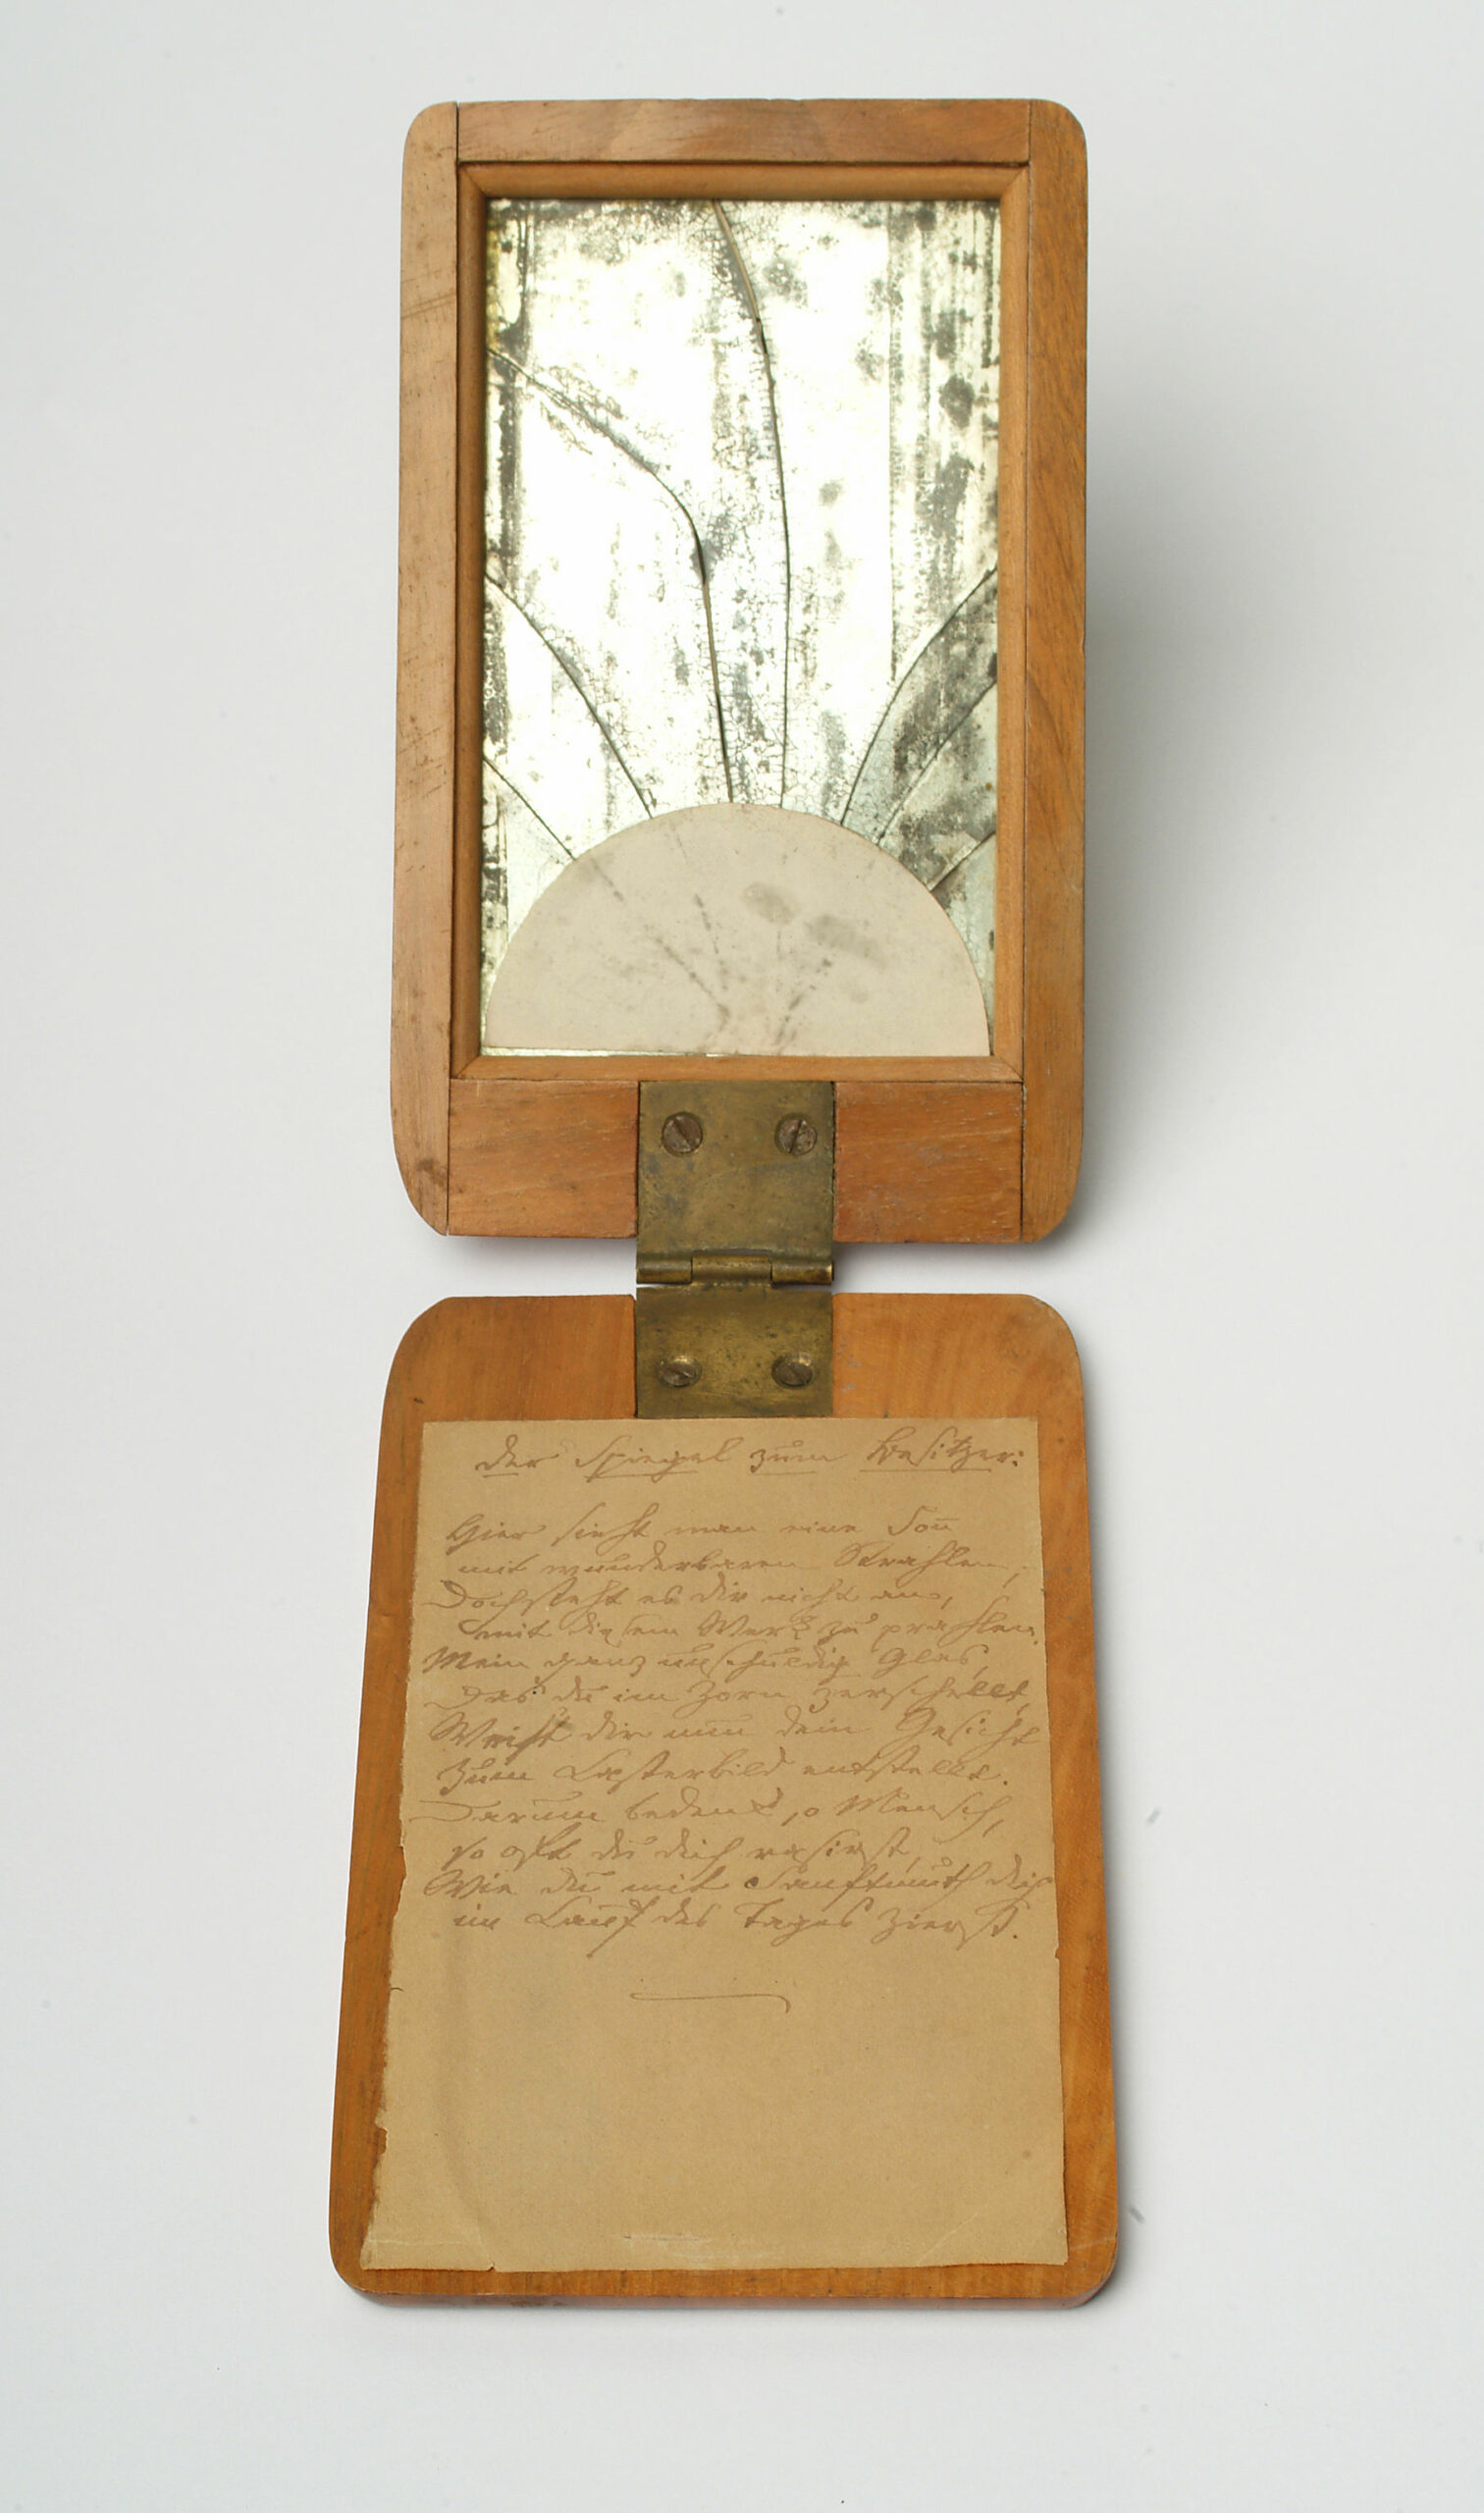 Abbildung eines aufklappbaren Spiegels auf Holzplatten, auf der Platte ohne Spiegel ist ein Text auf Papier befestigt